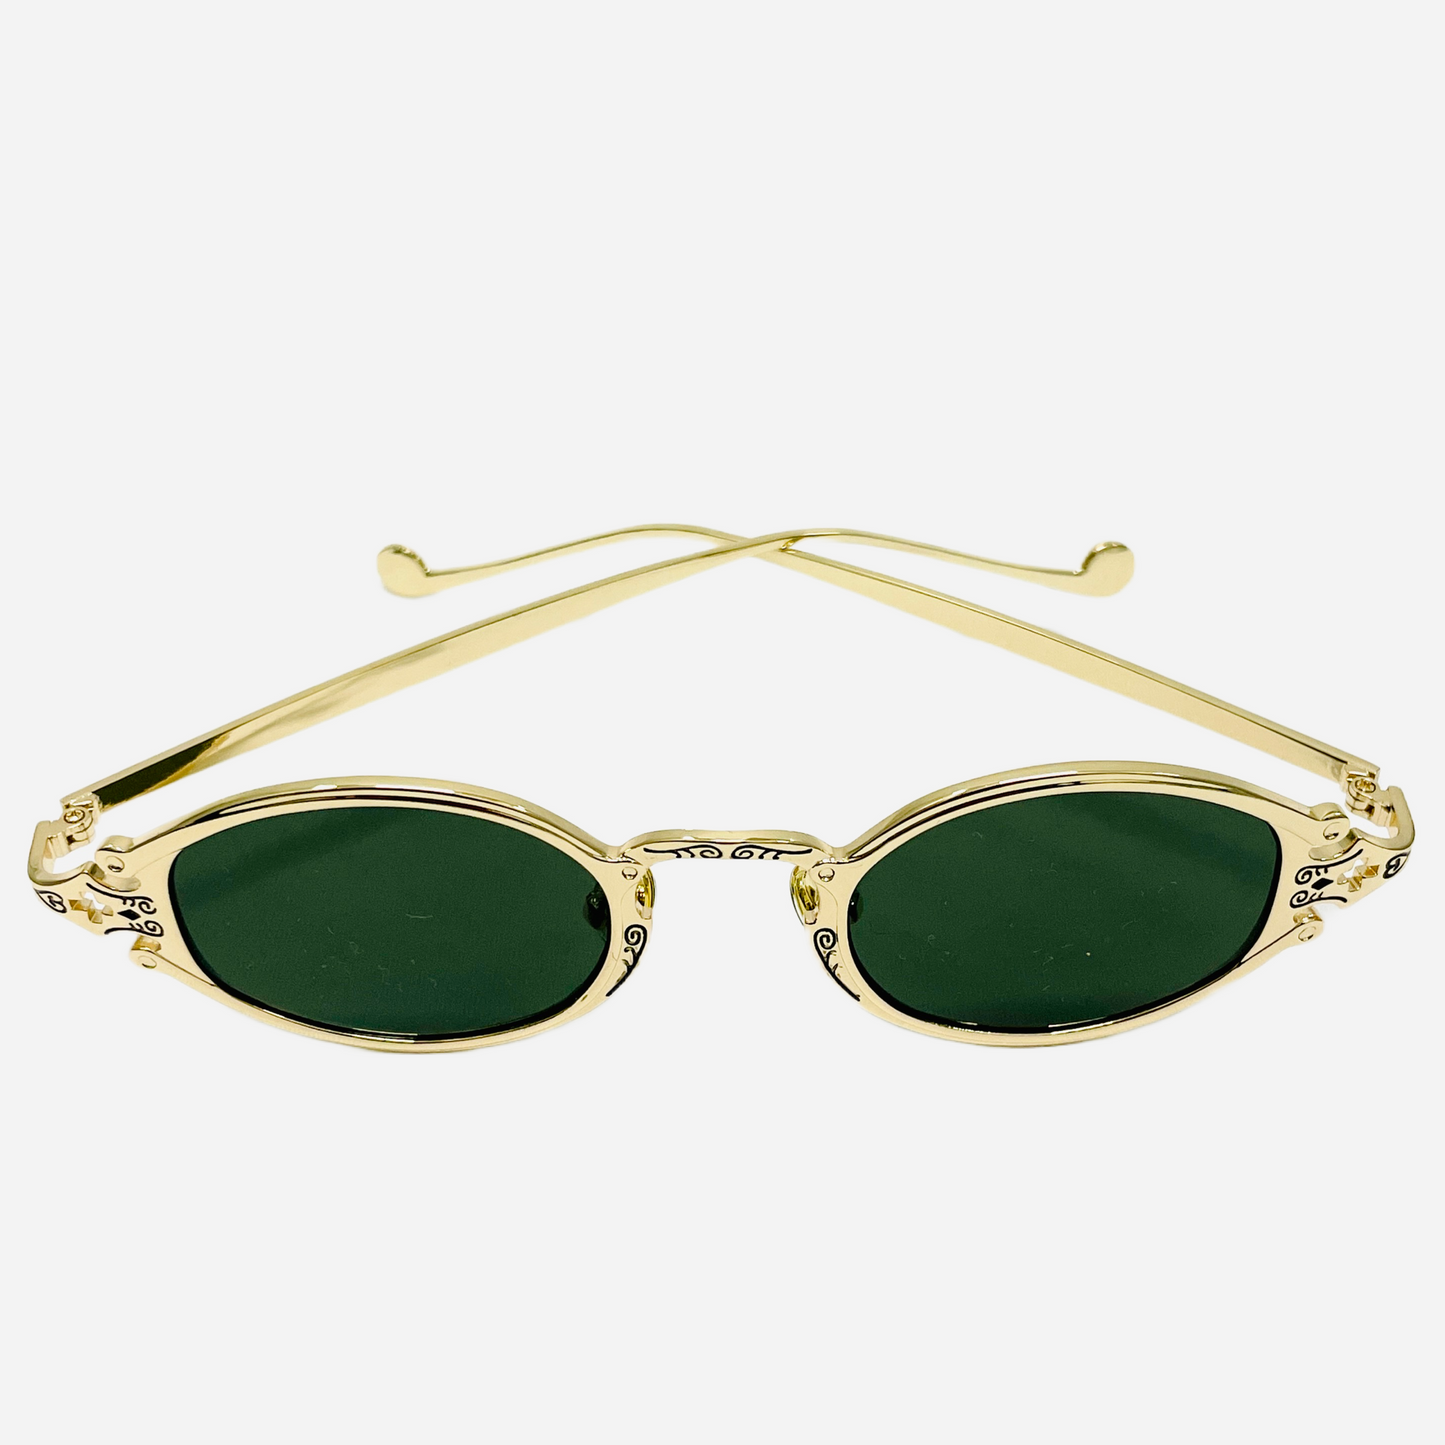 Vintage-Jean-Paul-Gaultier-Sonnenbrille-Sunglasses-Model-56-0001-gold-front